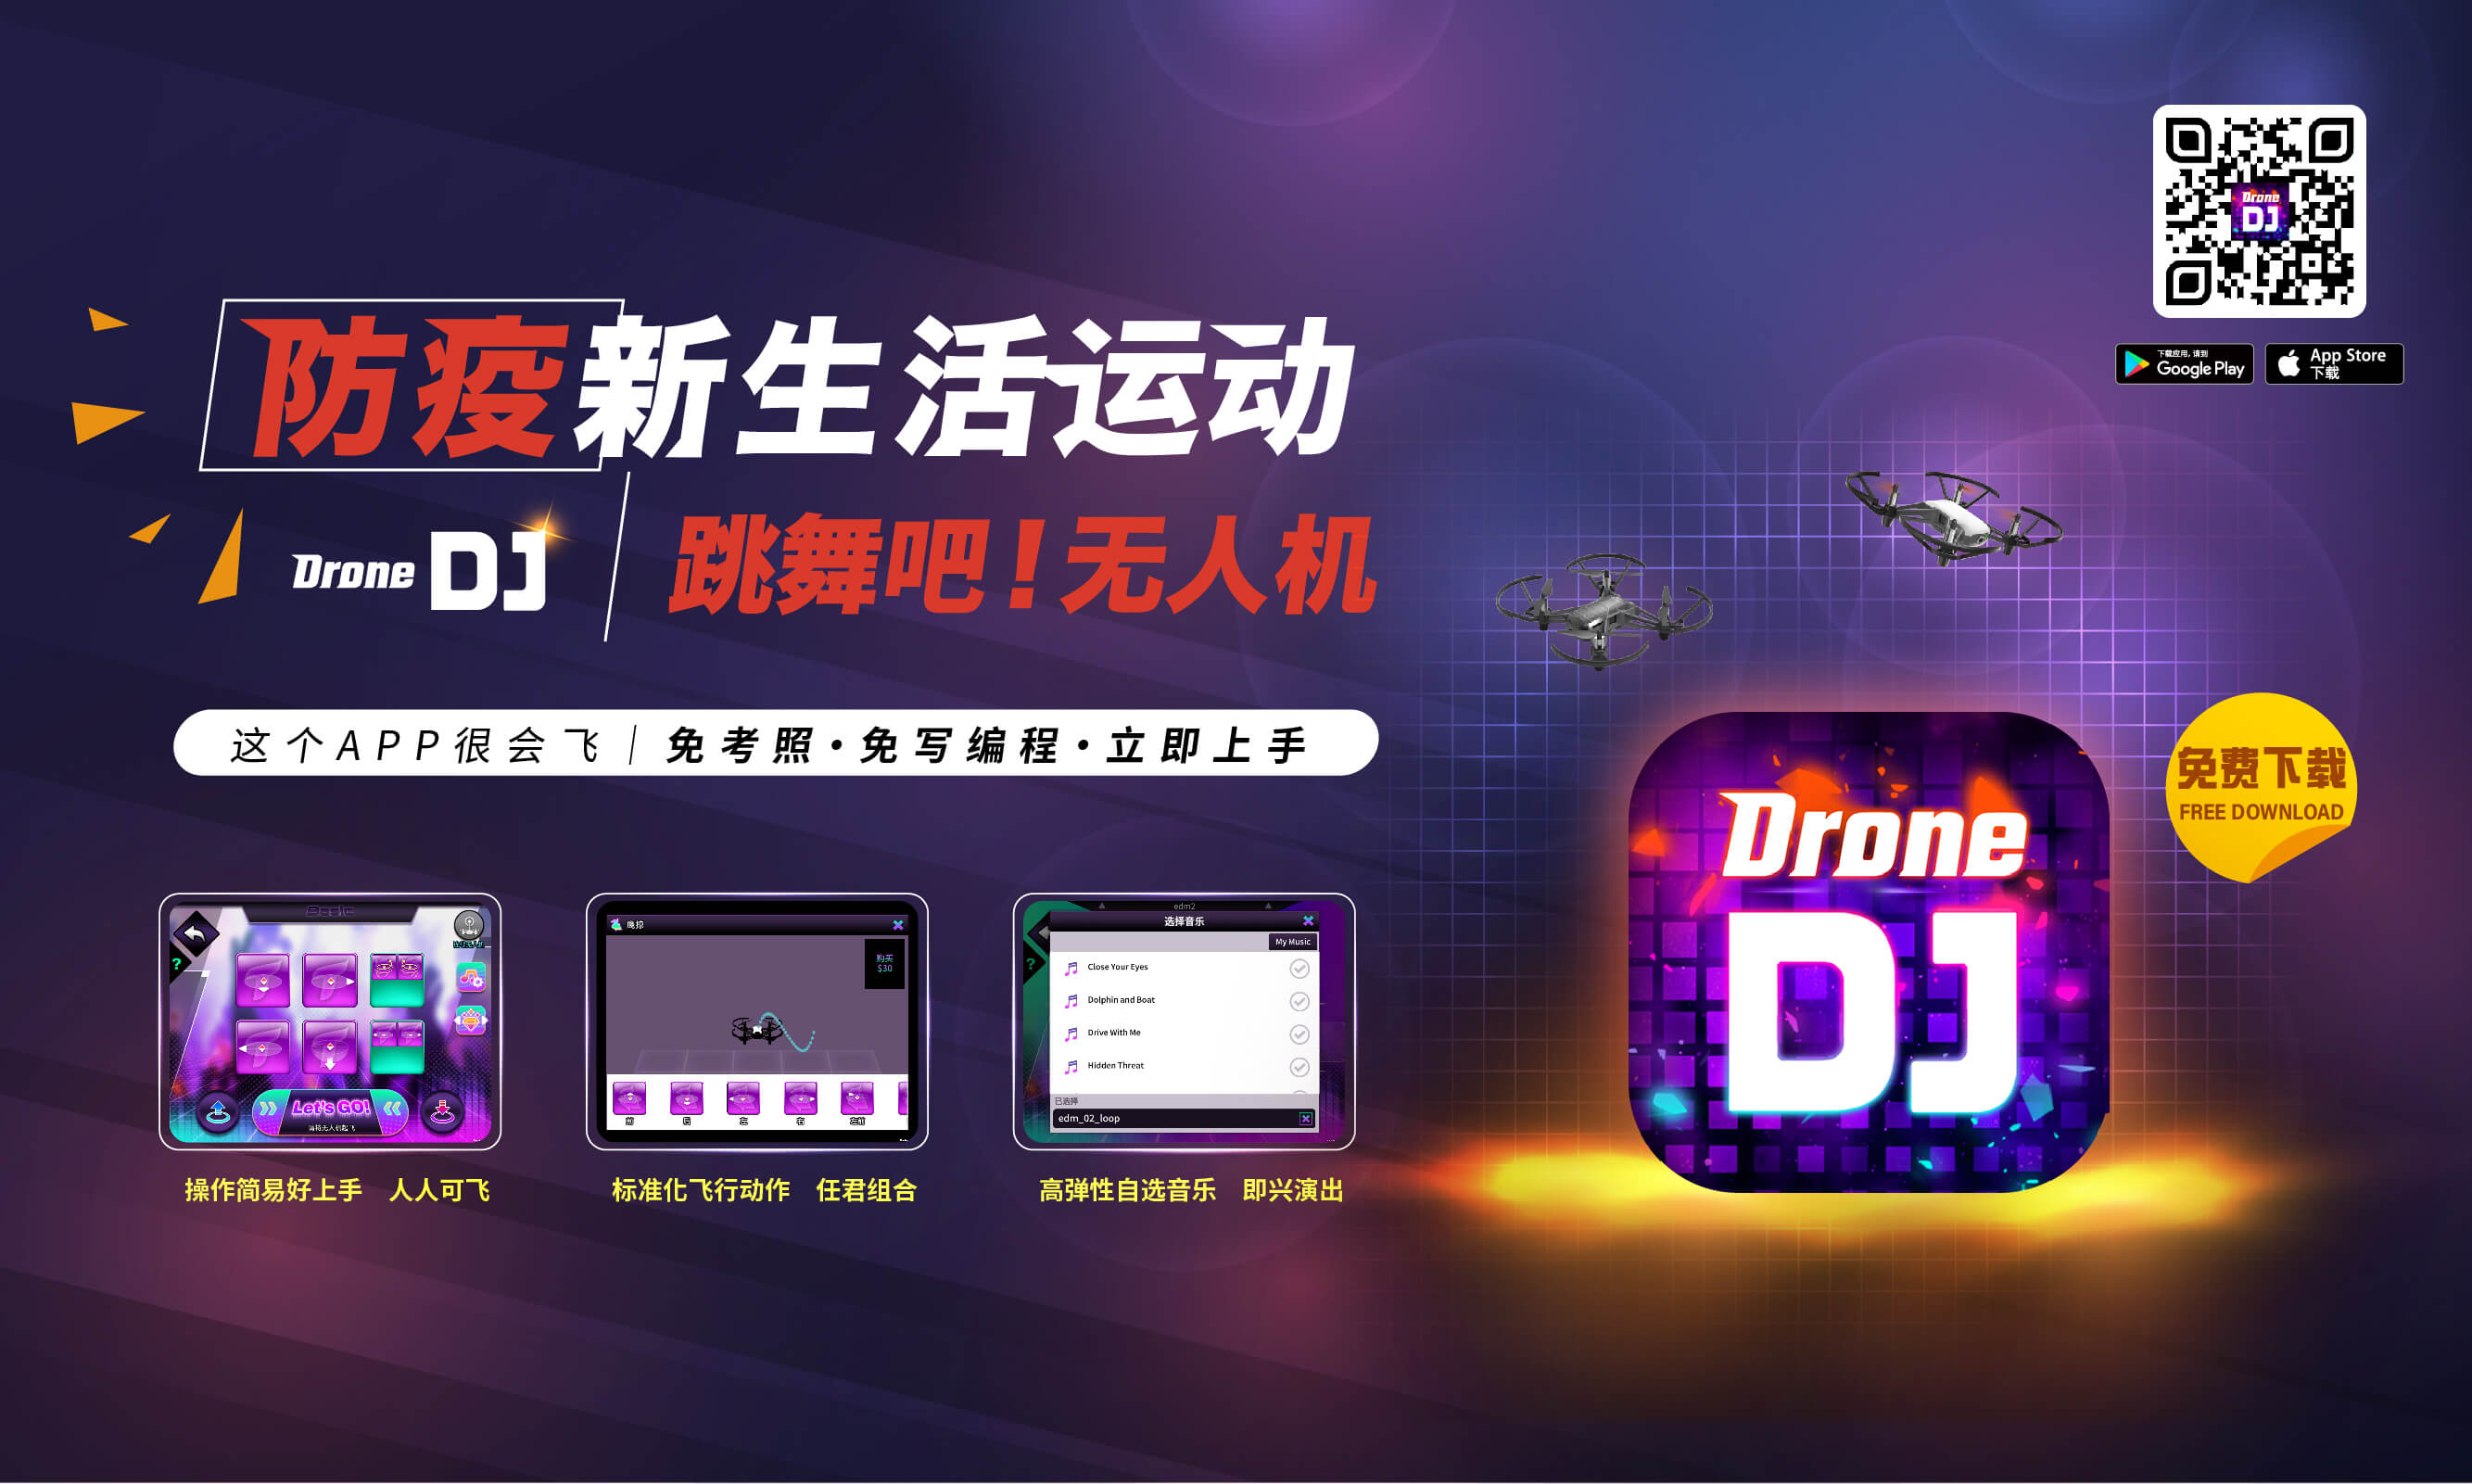 防疫新生活运动<br>Drone DJ/跳舞吧!无人机<br>APP下载连结:http://onelink.to/dpxre4